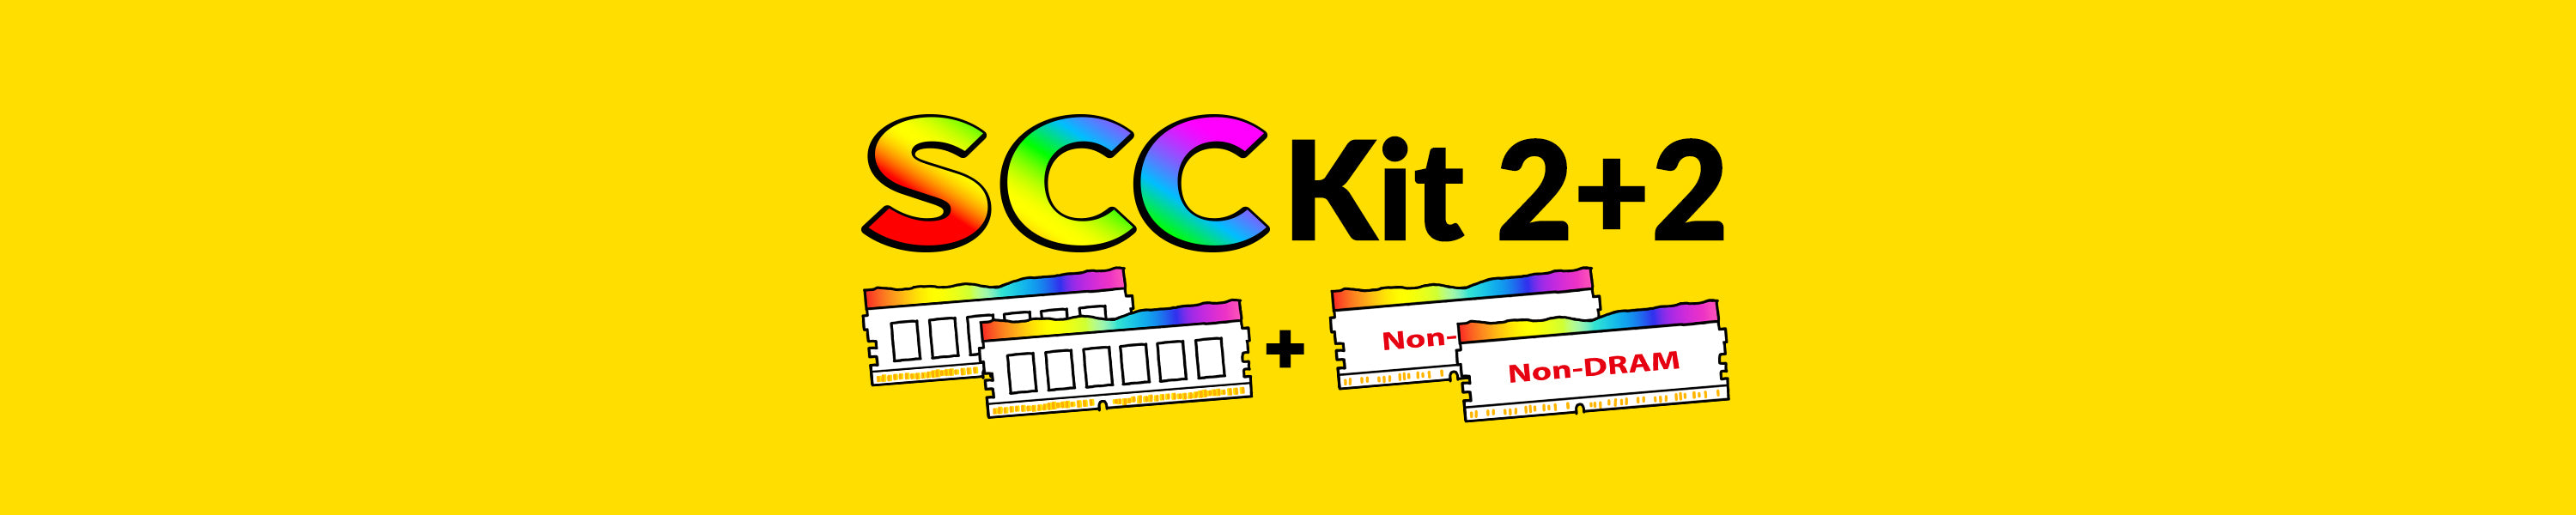 DDR4 | SCC Kit 2+2